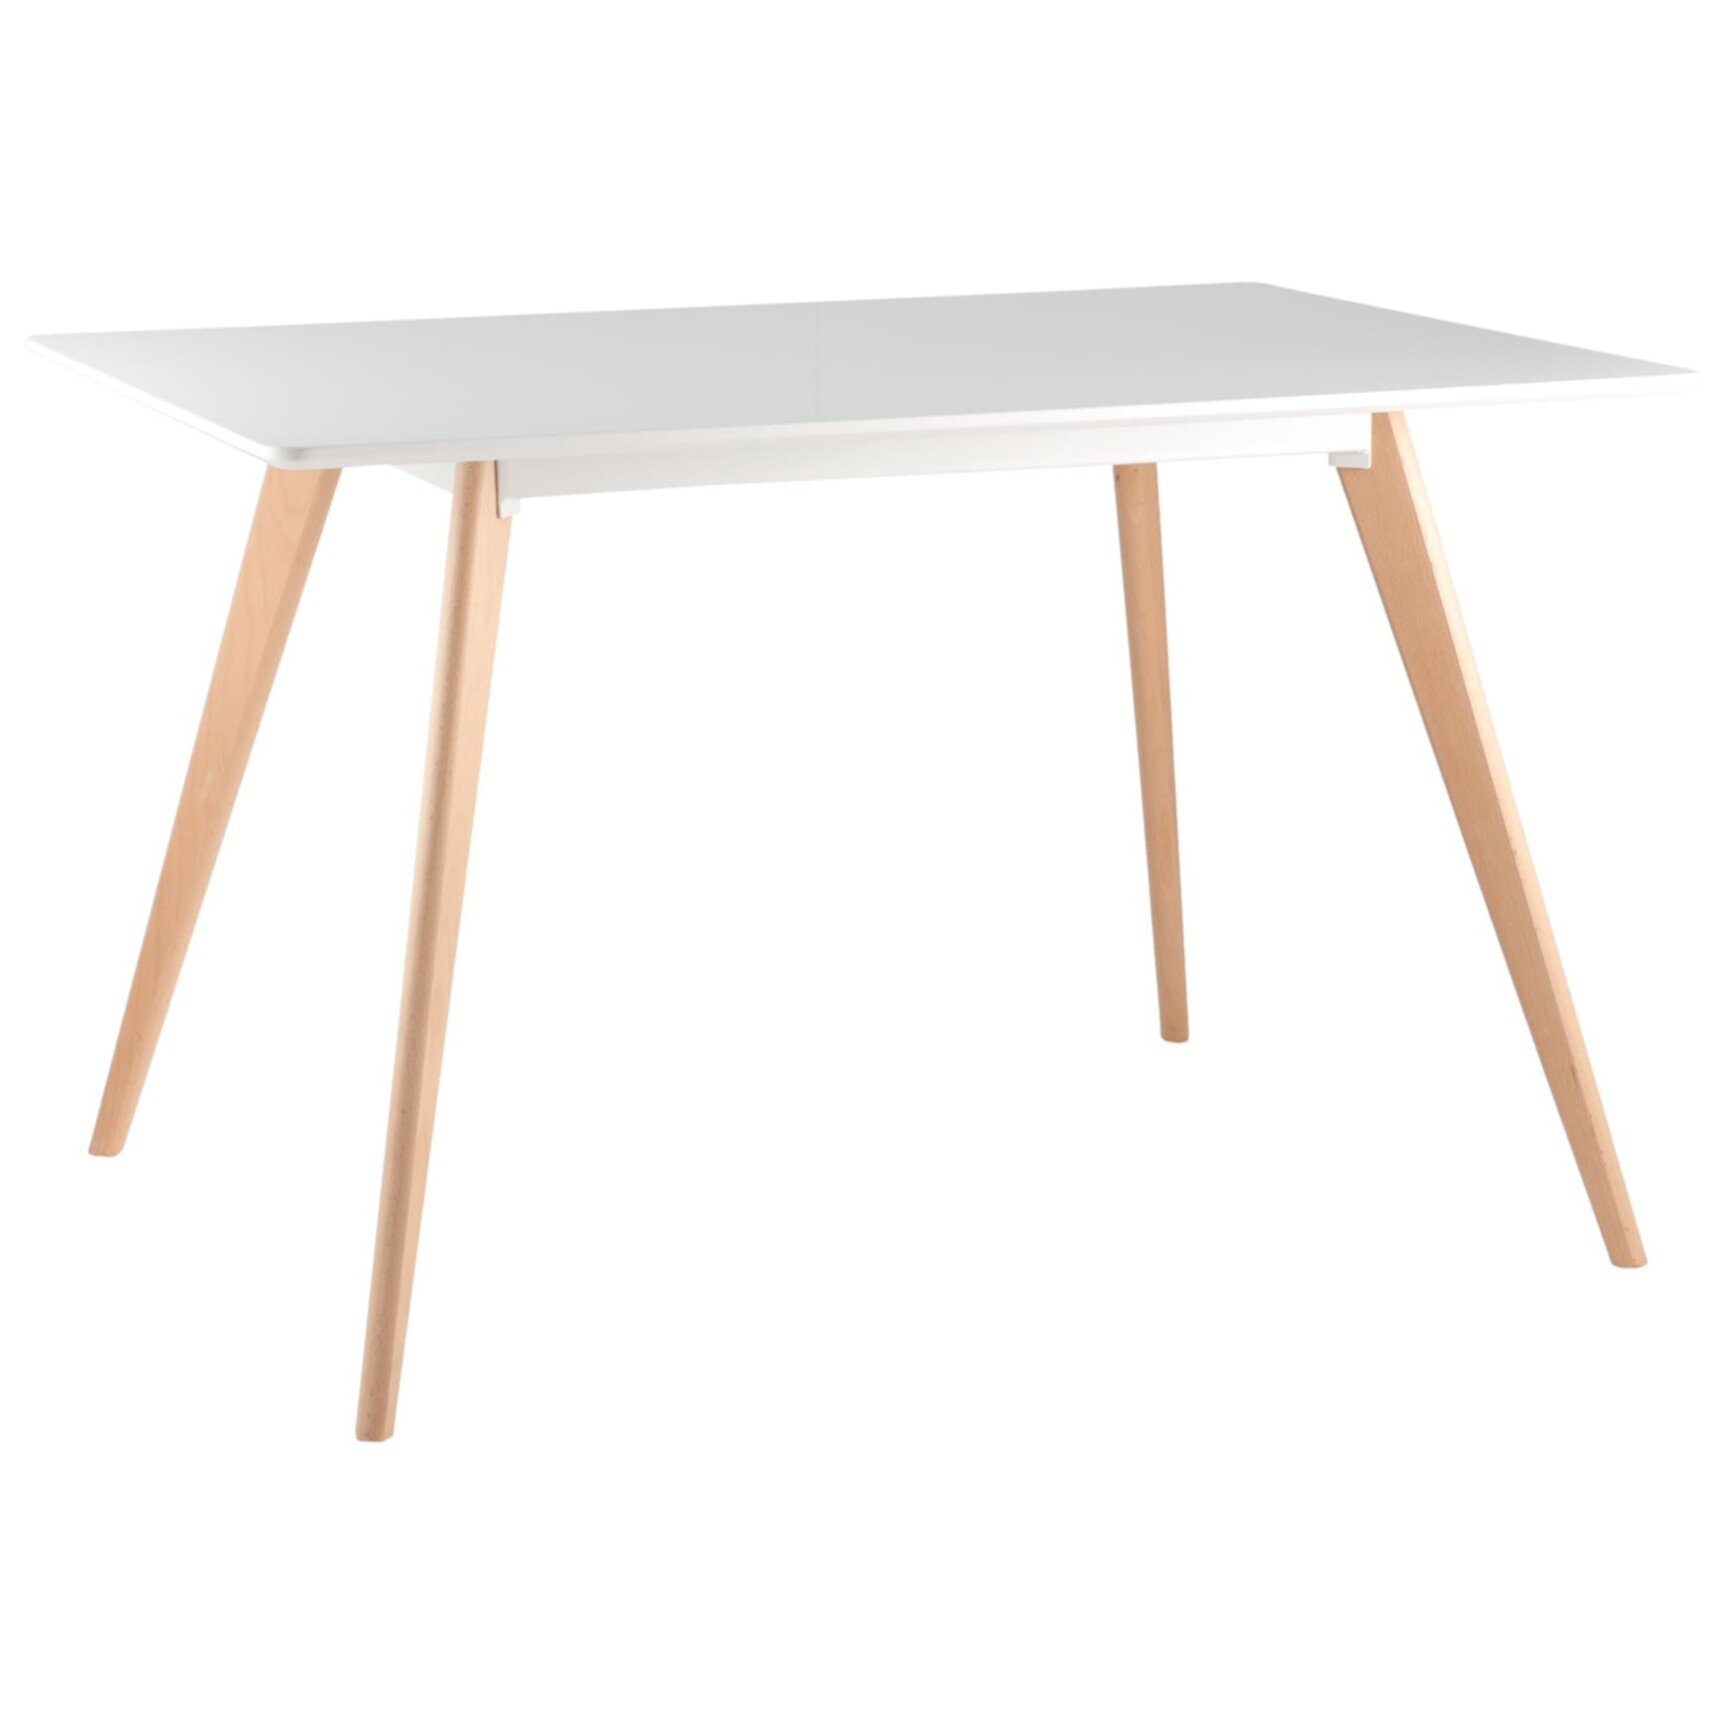 Обеденный стол белый с деревянными ножками 120х80 см Frank